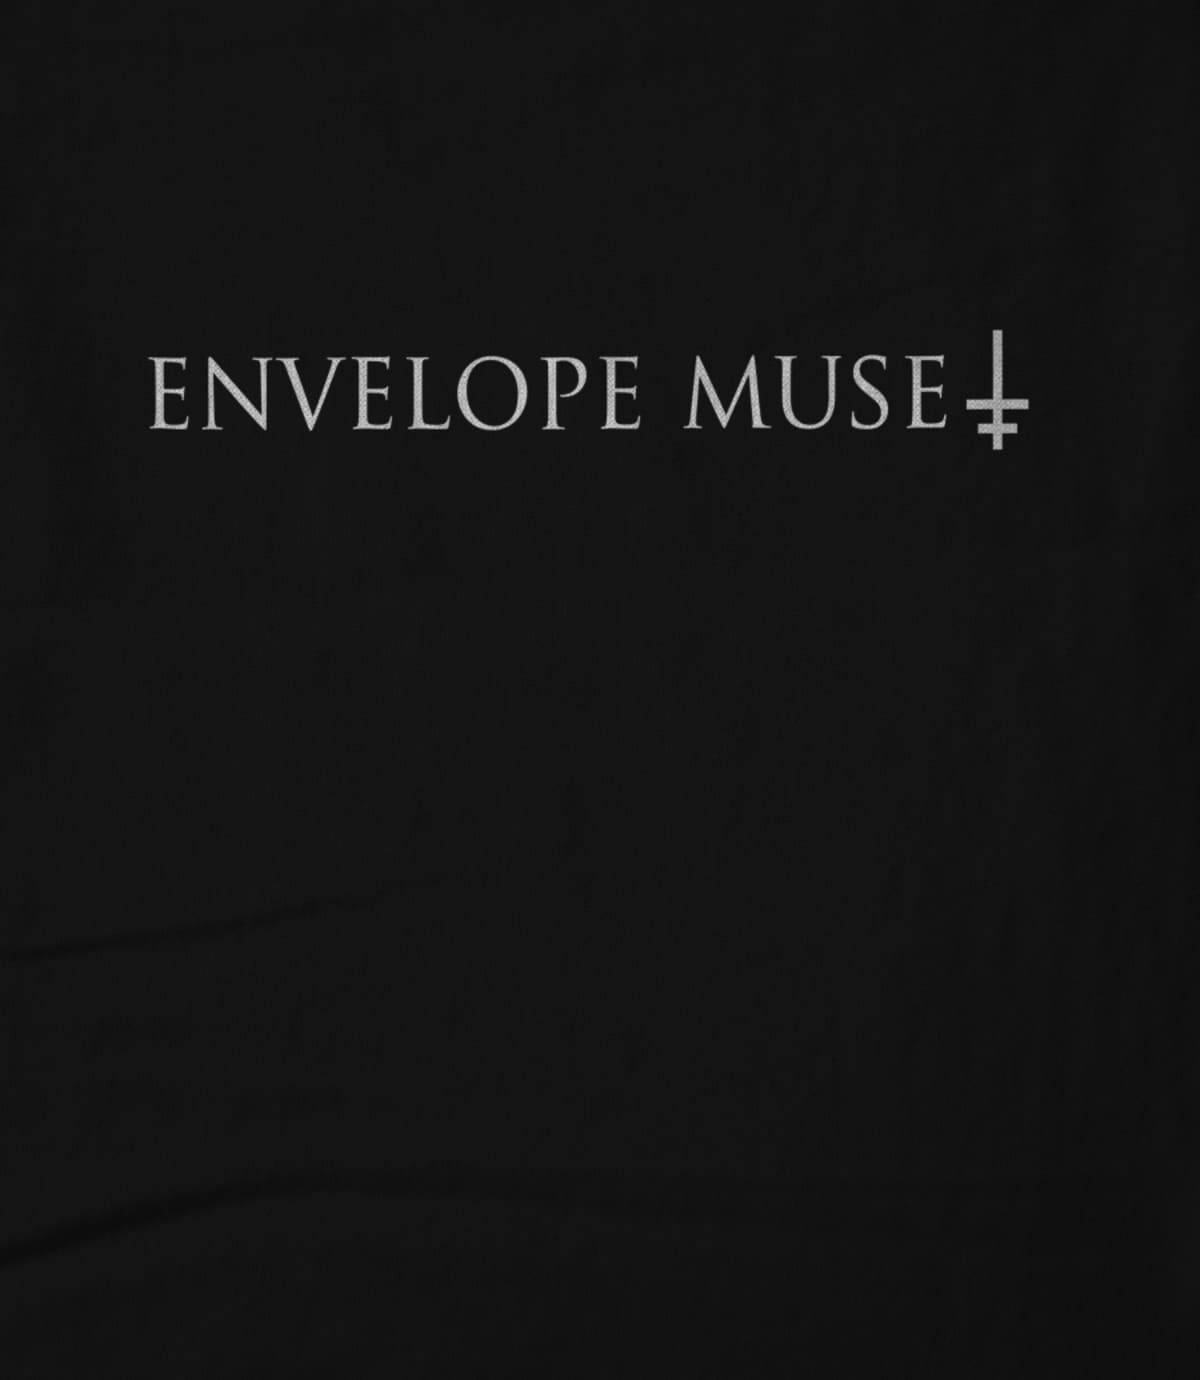 Envelope Muse